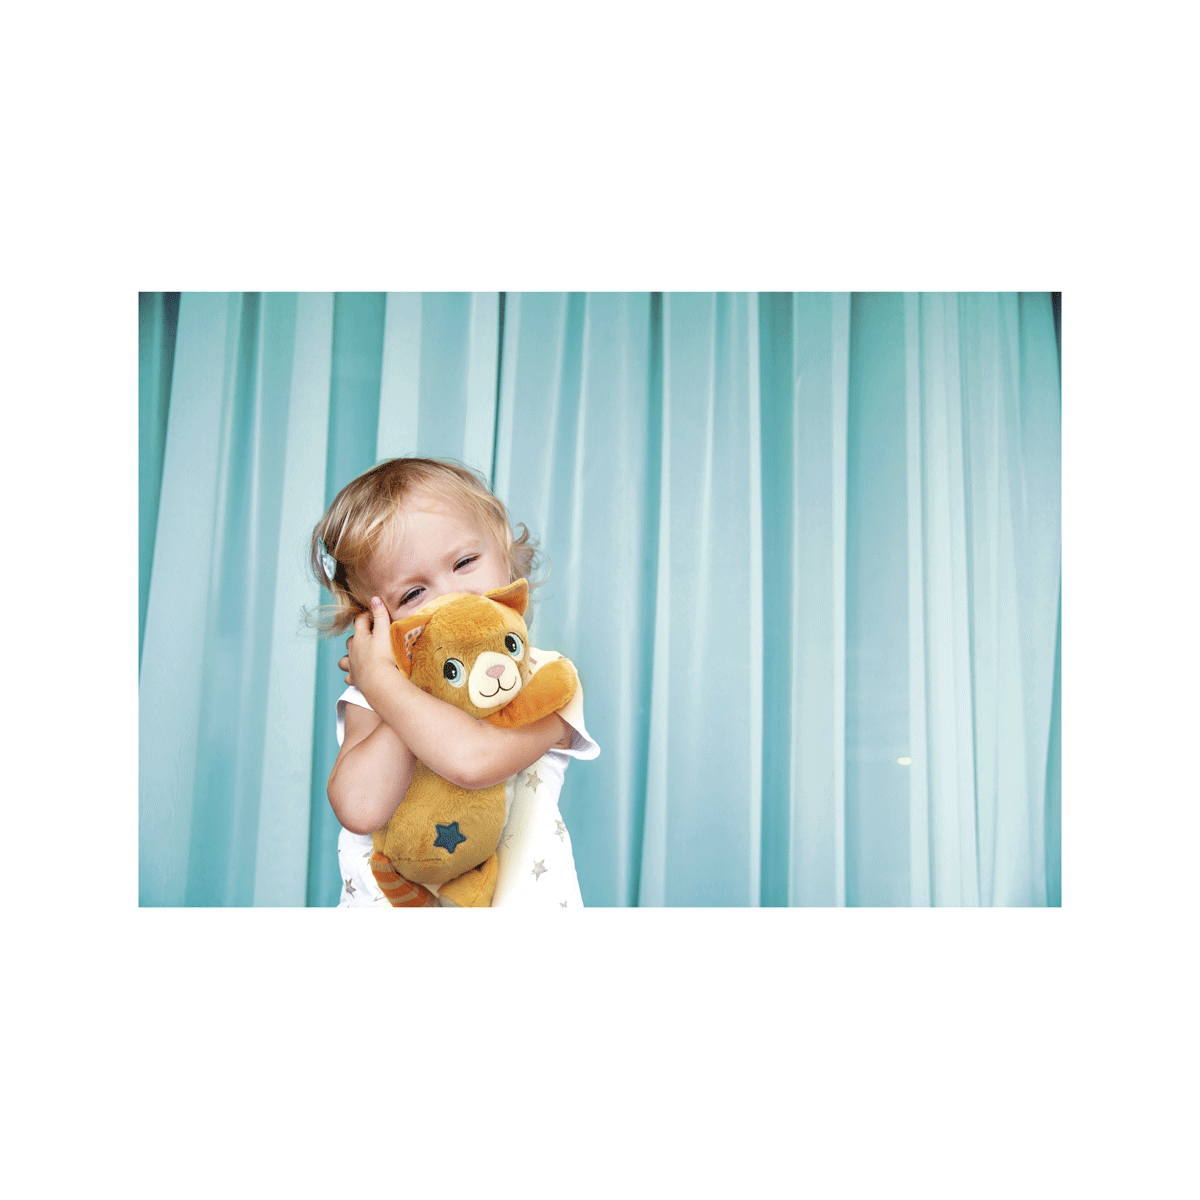 Clementoni - roby ron ron, peluche interattivo con vibrazione, melodie e suoni - BABY CLEMENTONI